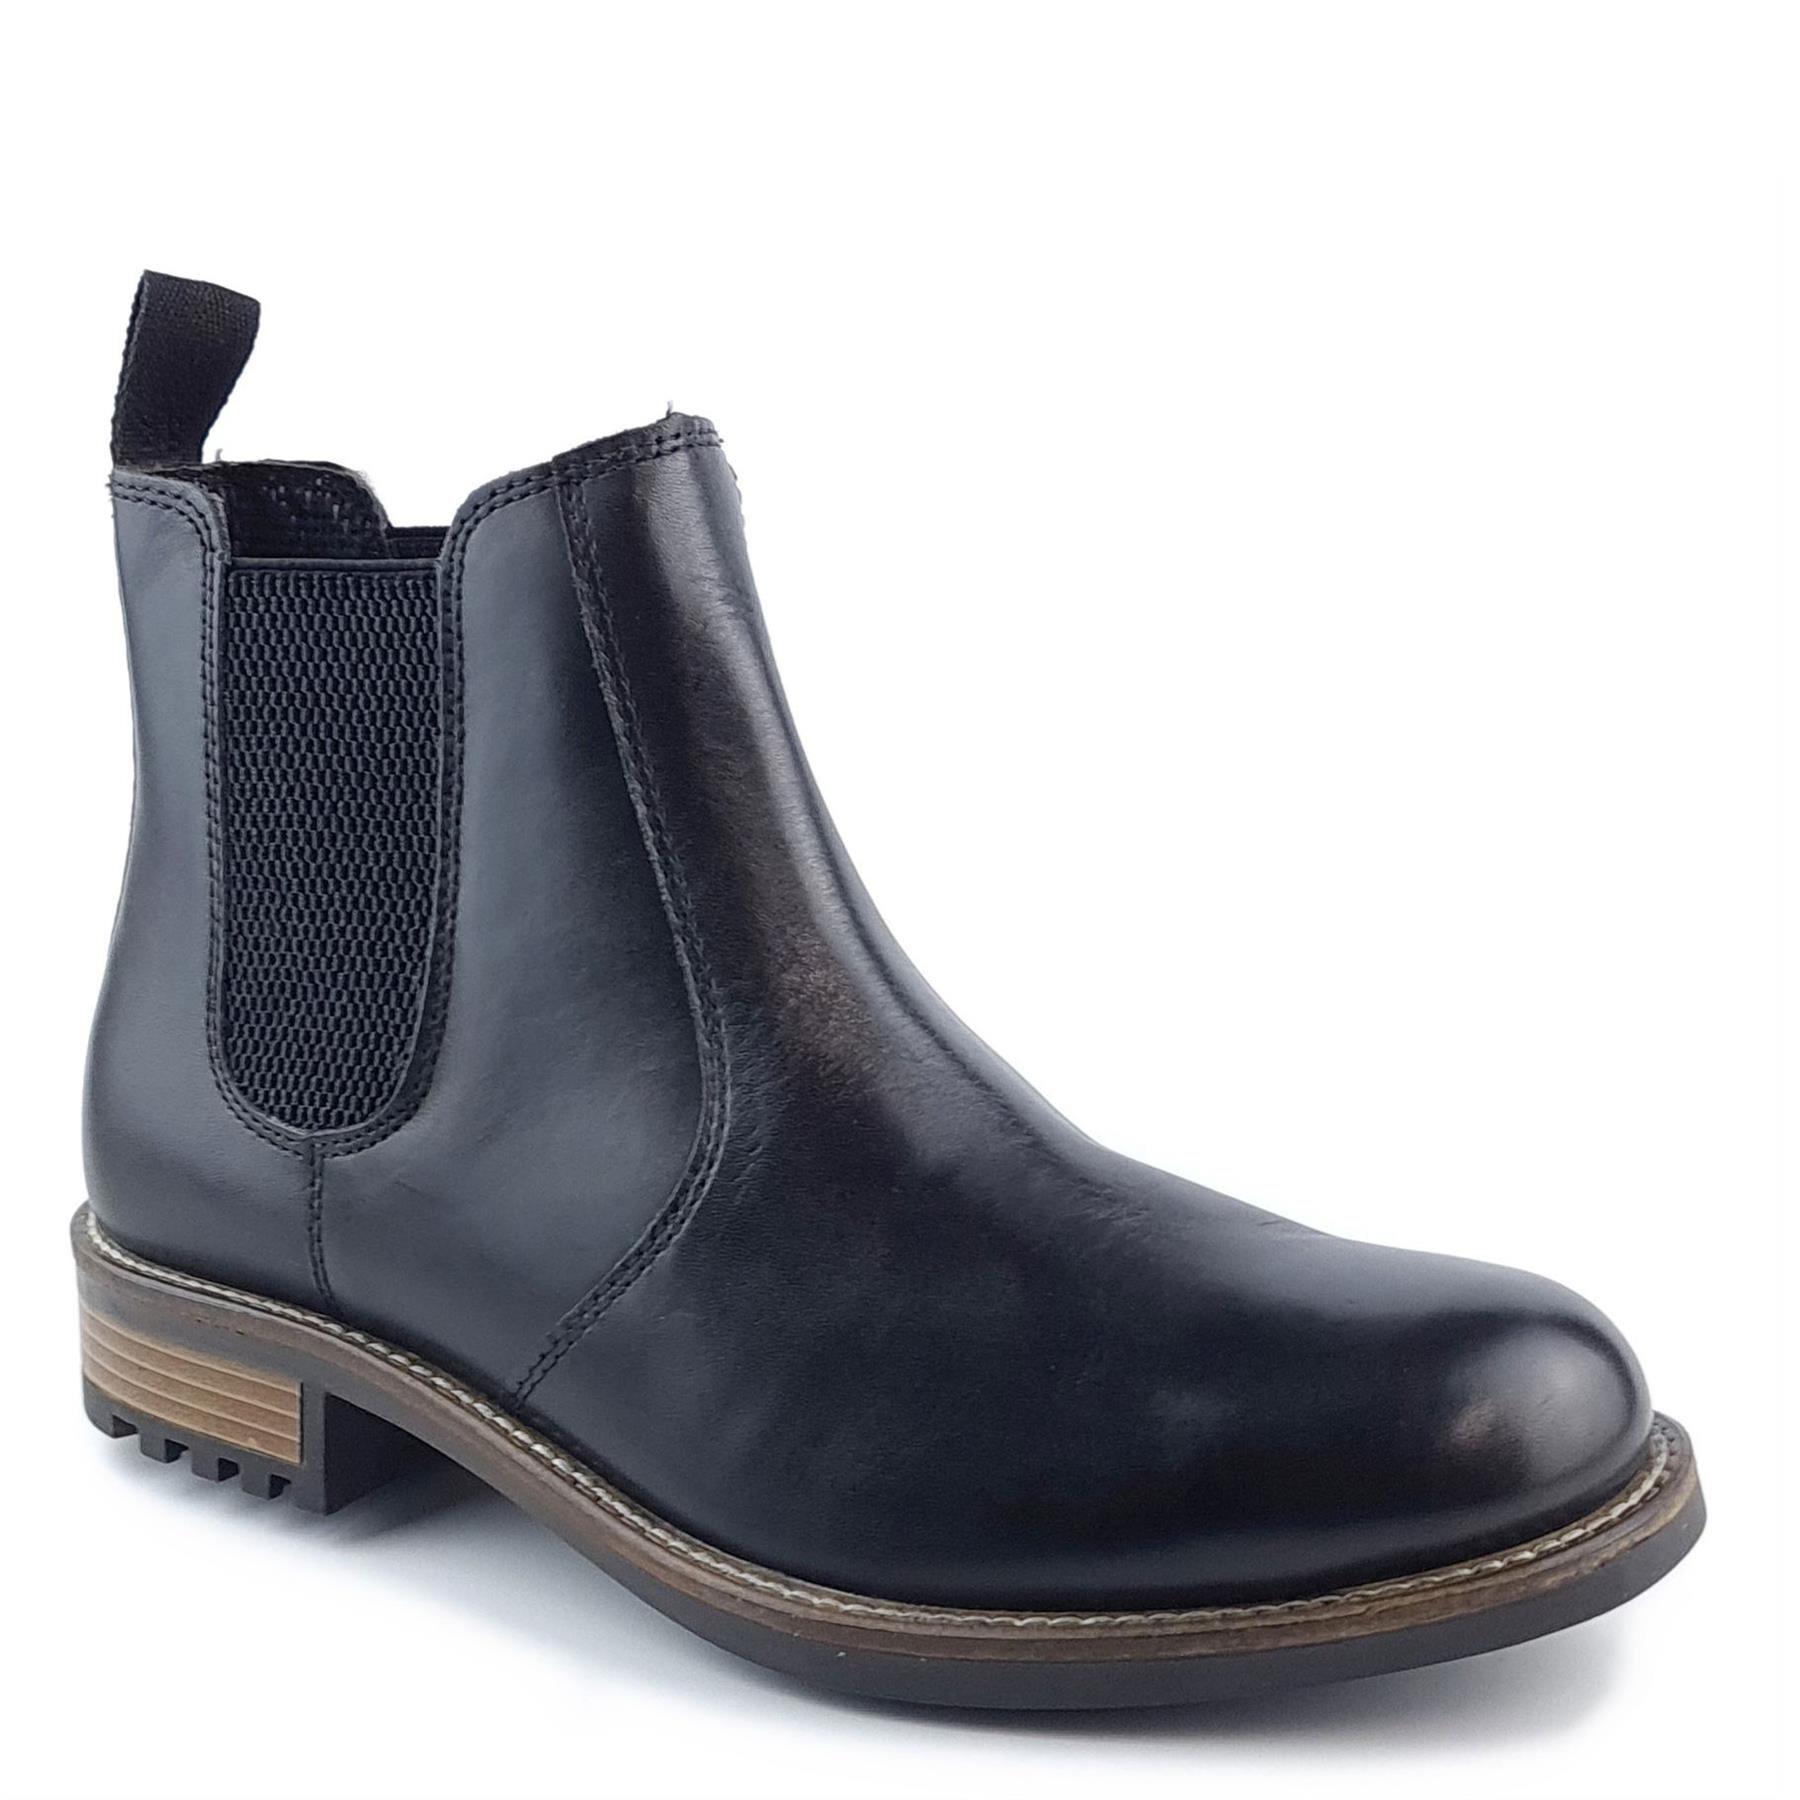 Кожаные ботинки челси Loddington Frank James, черный мужские ботинки из пу кожи коричневые ботинки на пуговицах мужские коричневые ботильоны деловые классические ботинки резная обувь модн